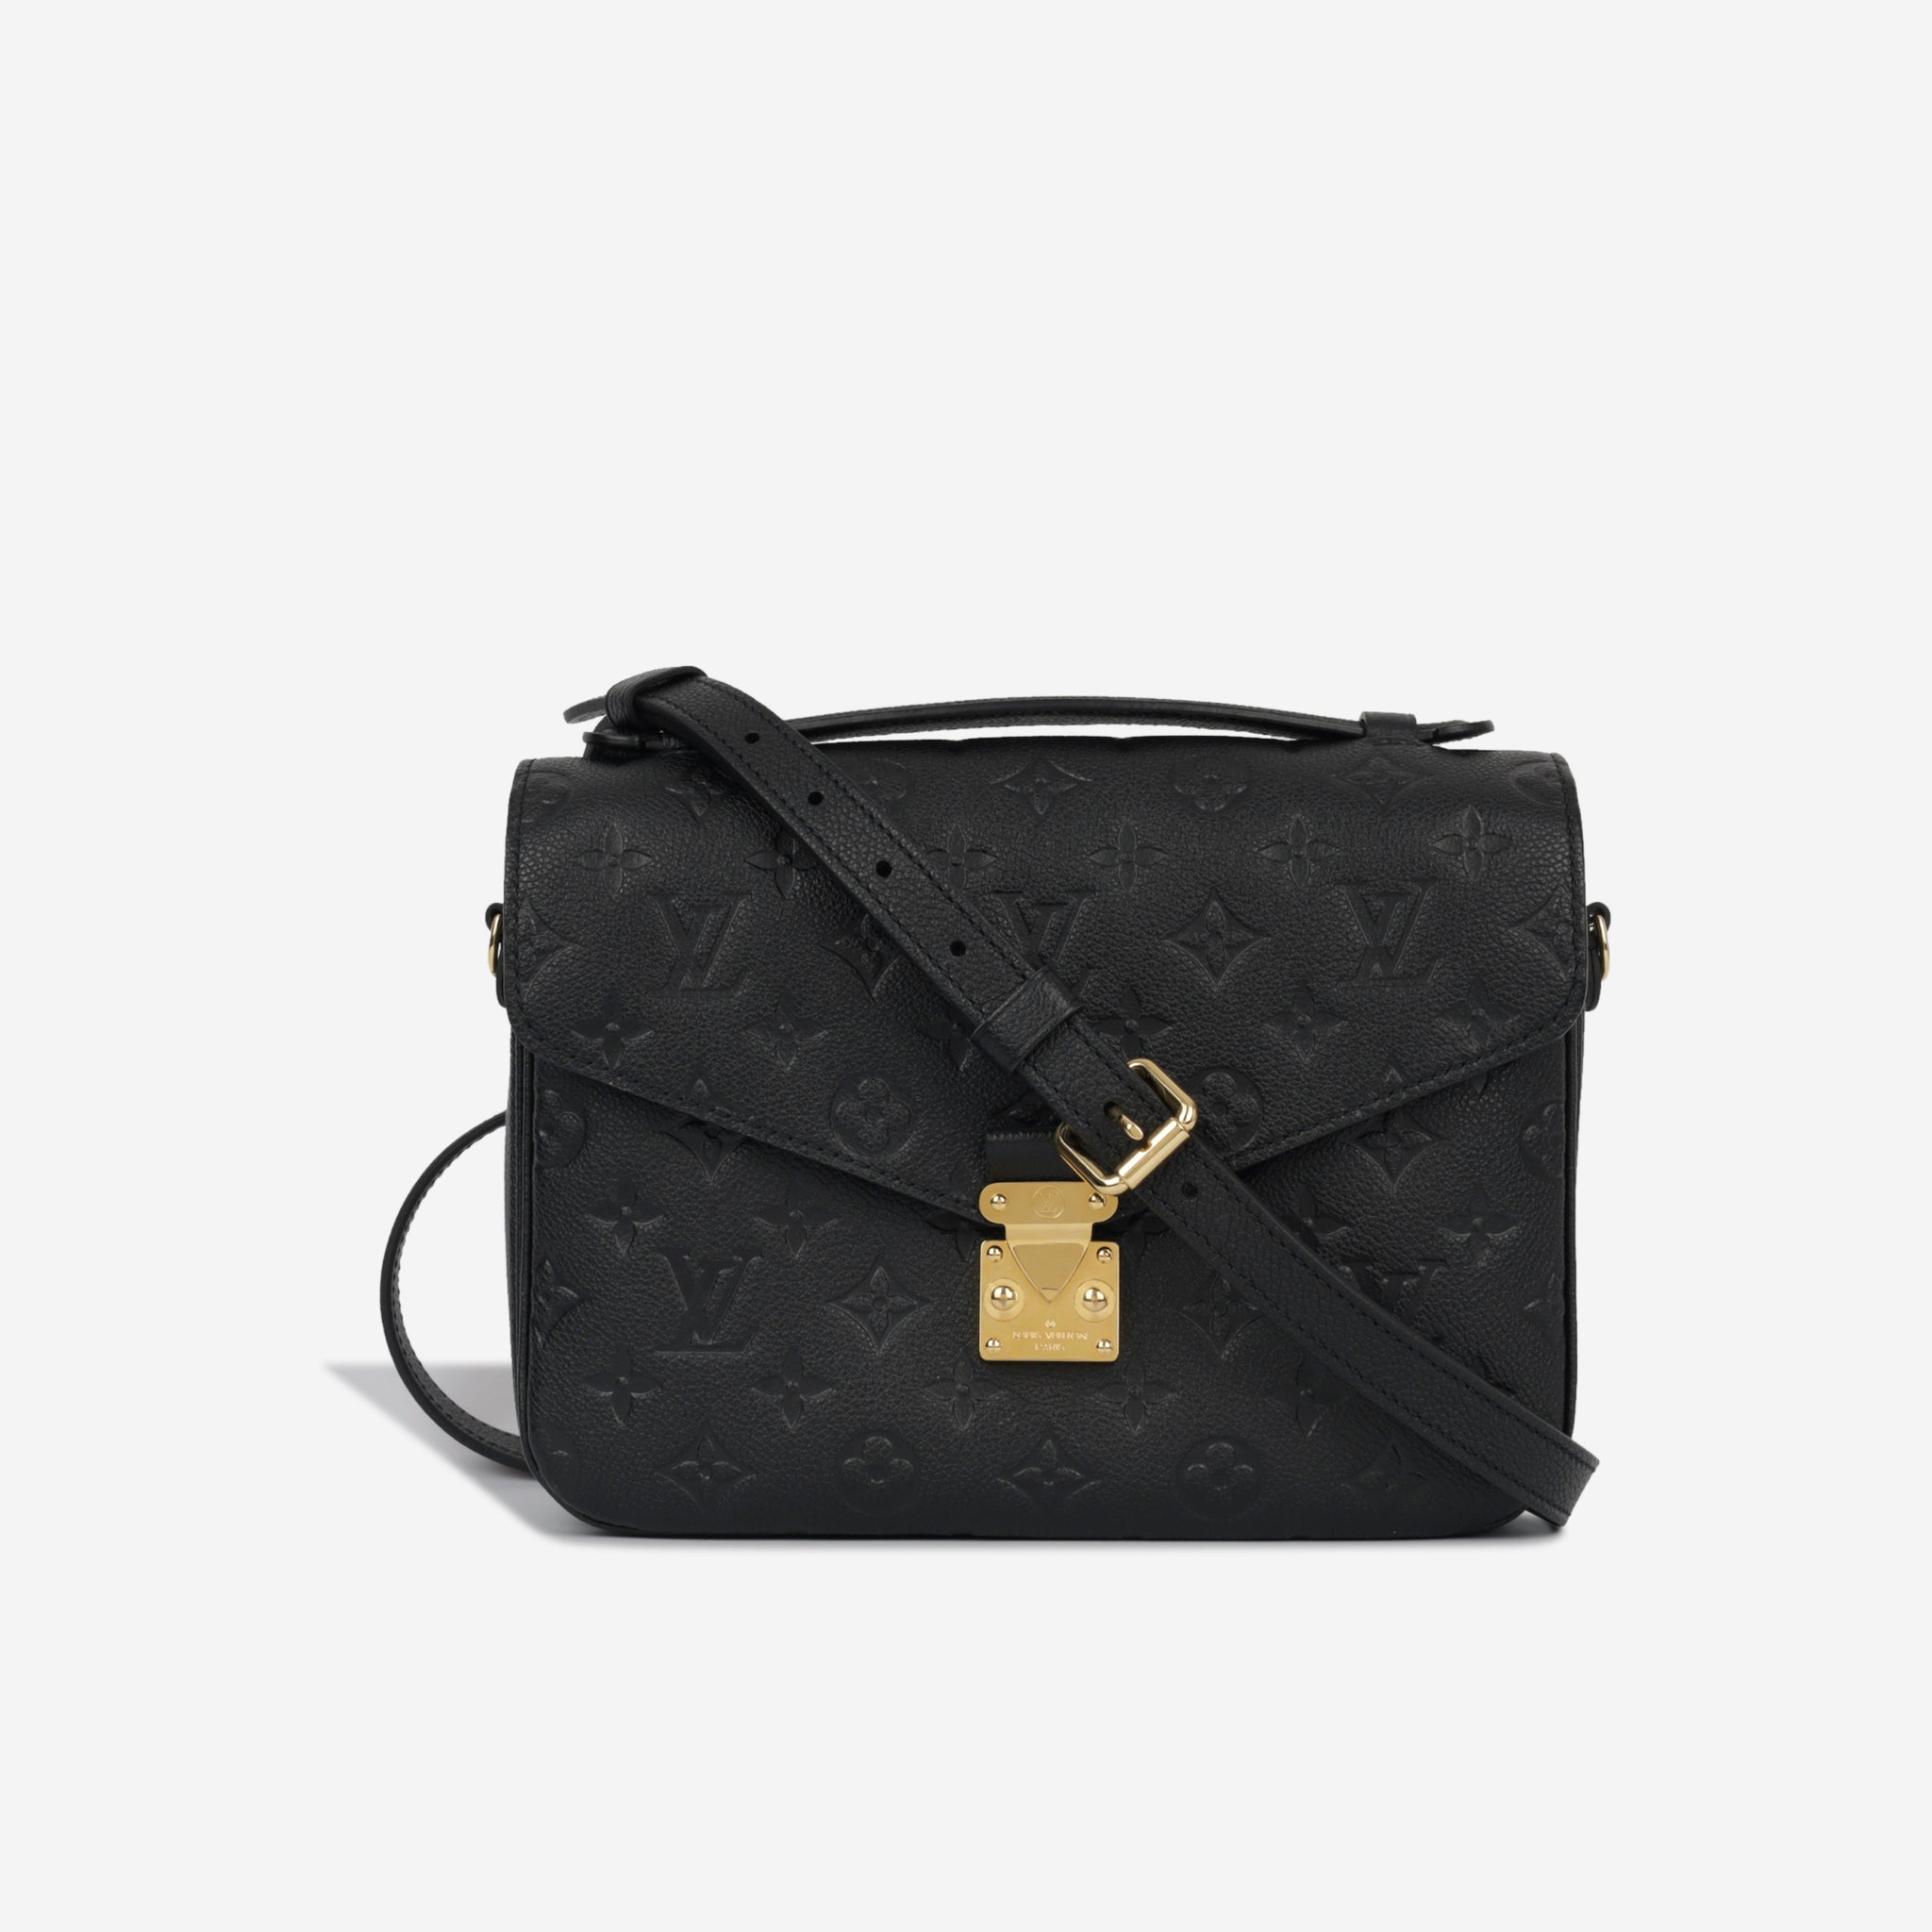 Louis Vuitton - Pochette Métis - Empreinte Leather - Black - Pre Loved